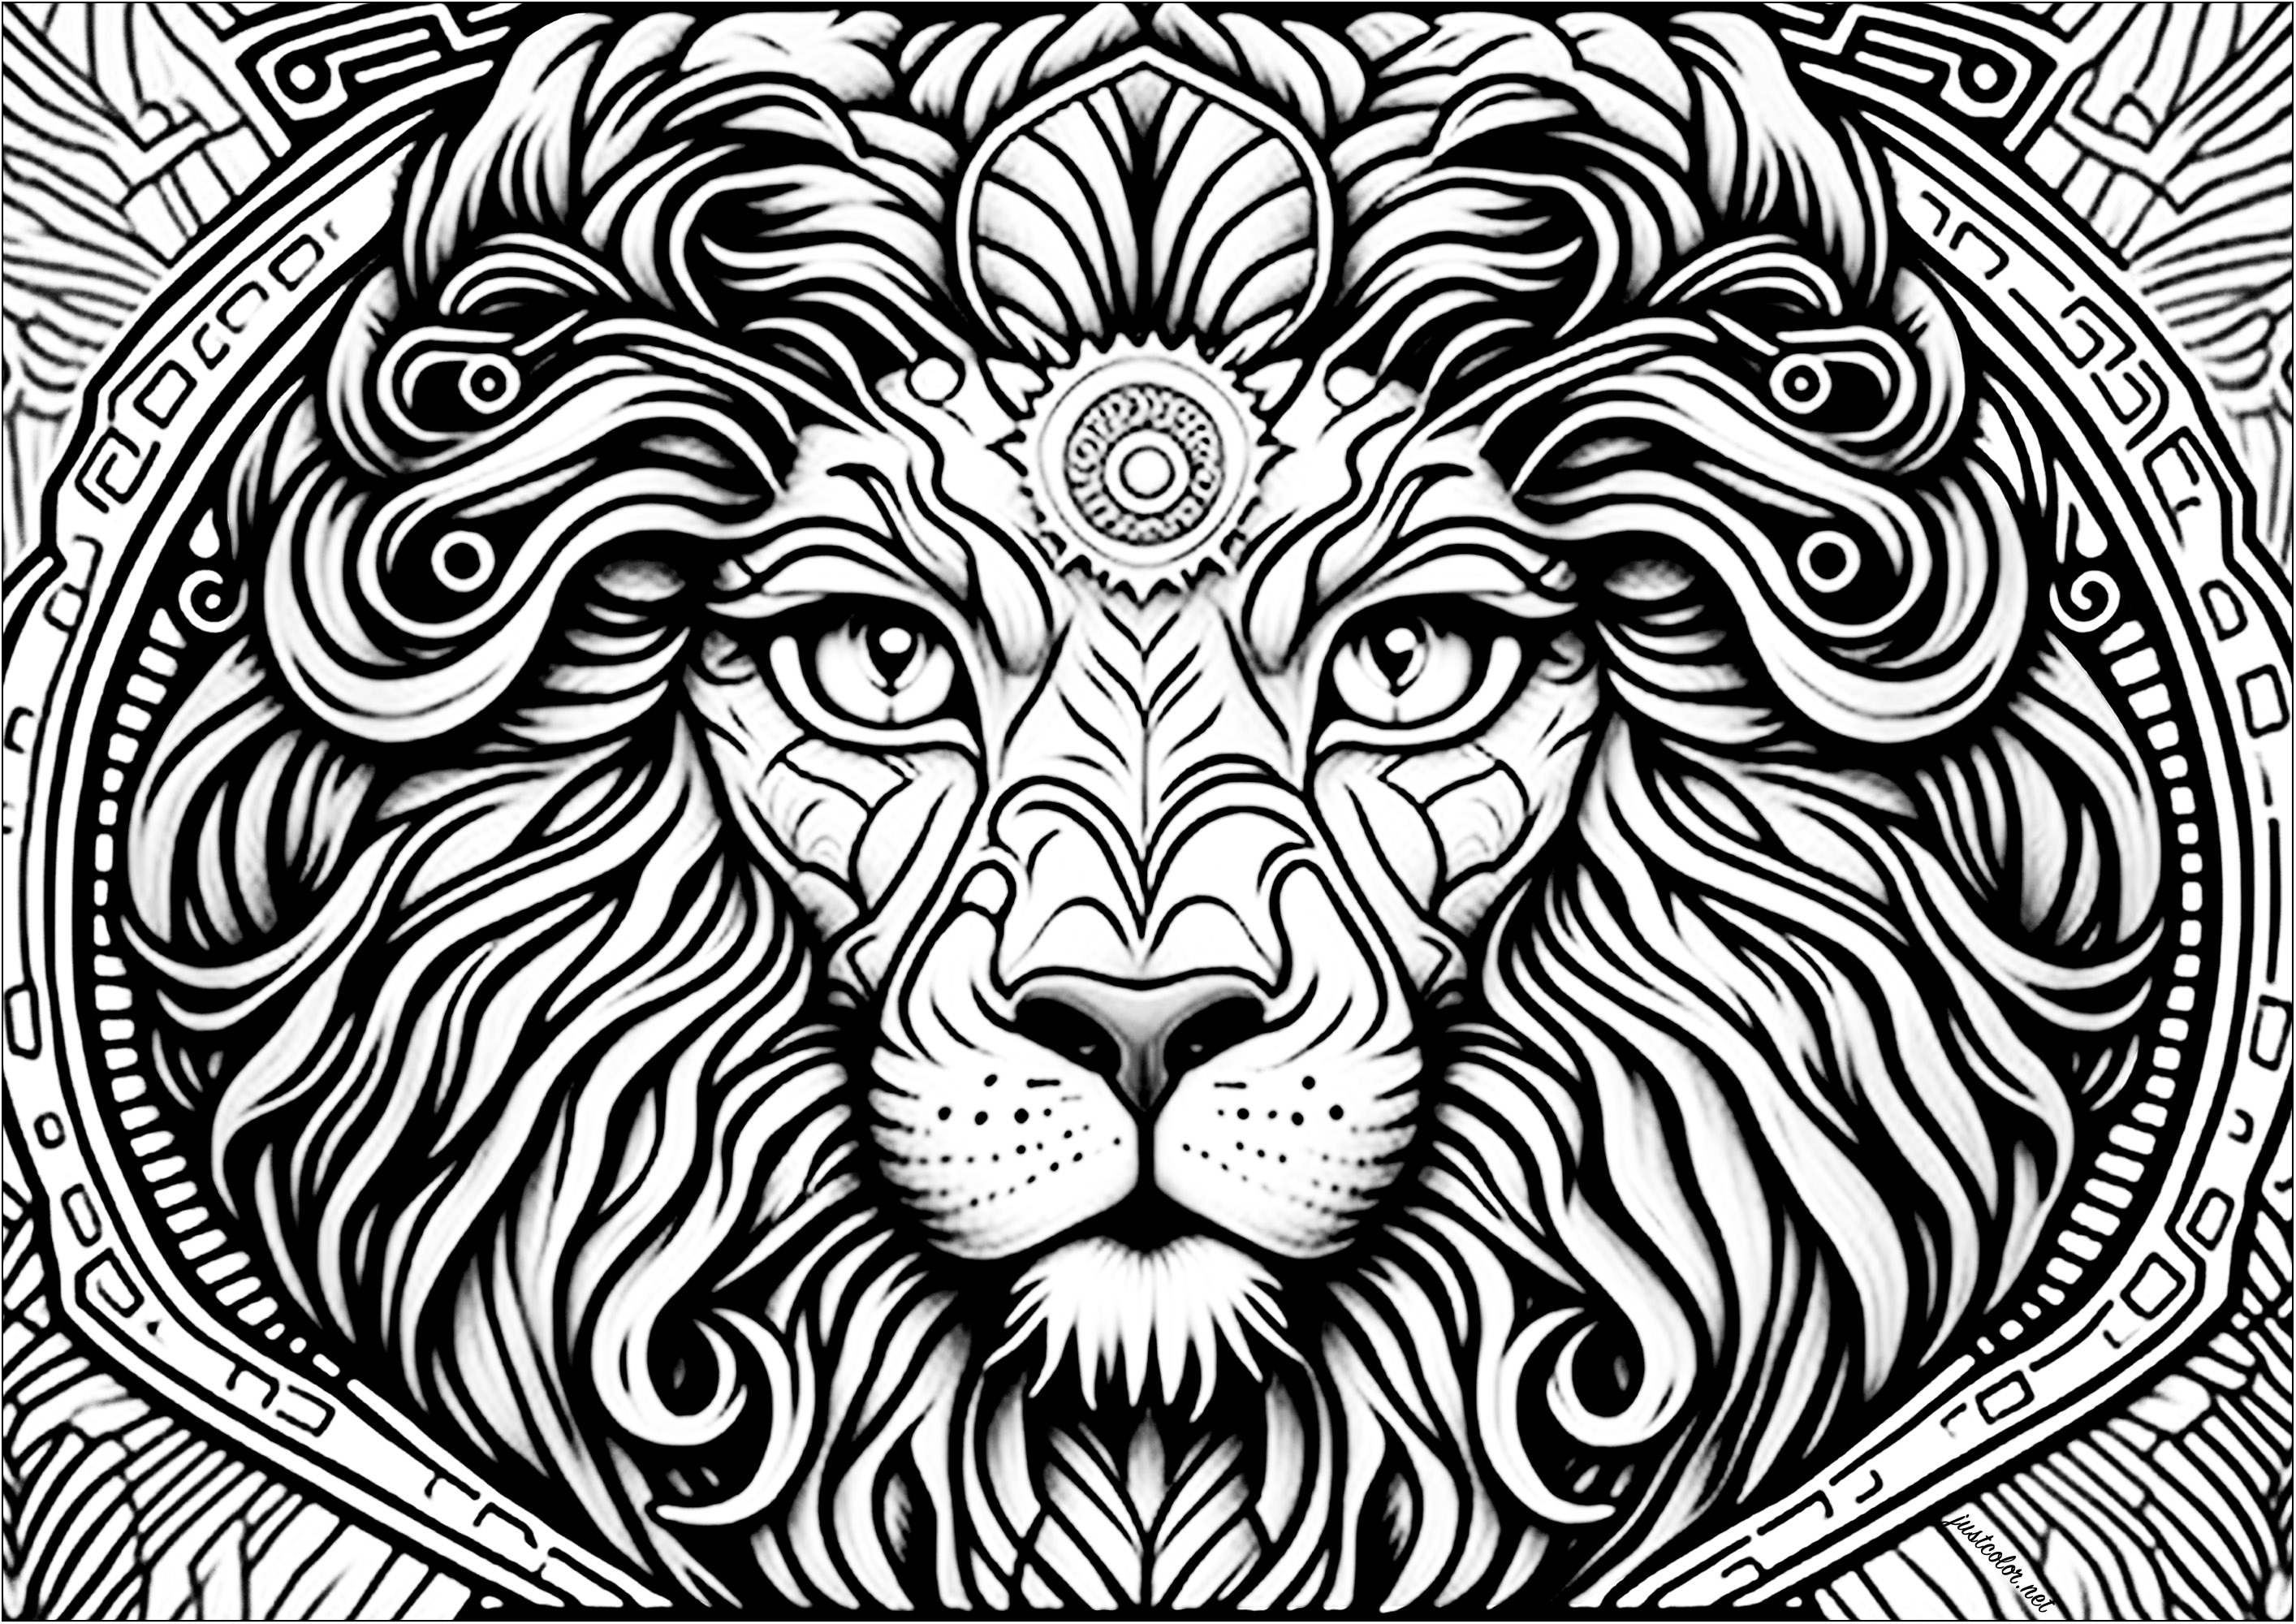 Testa di leone vista di fronte, con molti dettagli. Questa bella pagina da colorare rappresenta una testa di leone vista di fronte, con molti dettagli.Gli occhi sono spalancati e lo sguardo è penetrante. La criniera è piena e ondulata e si fonde con i dettagli astratti dello sfondo.